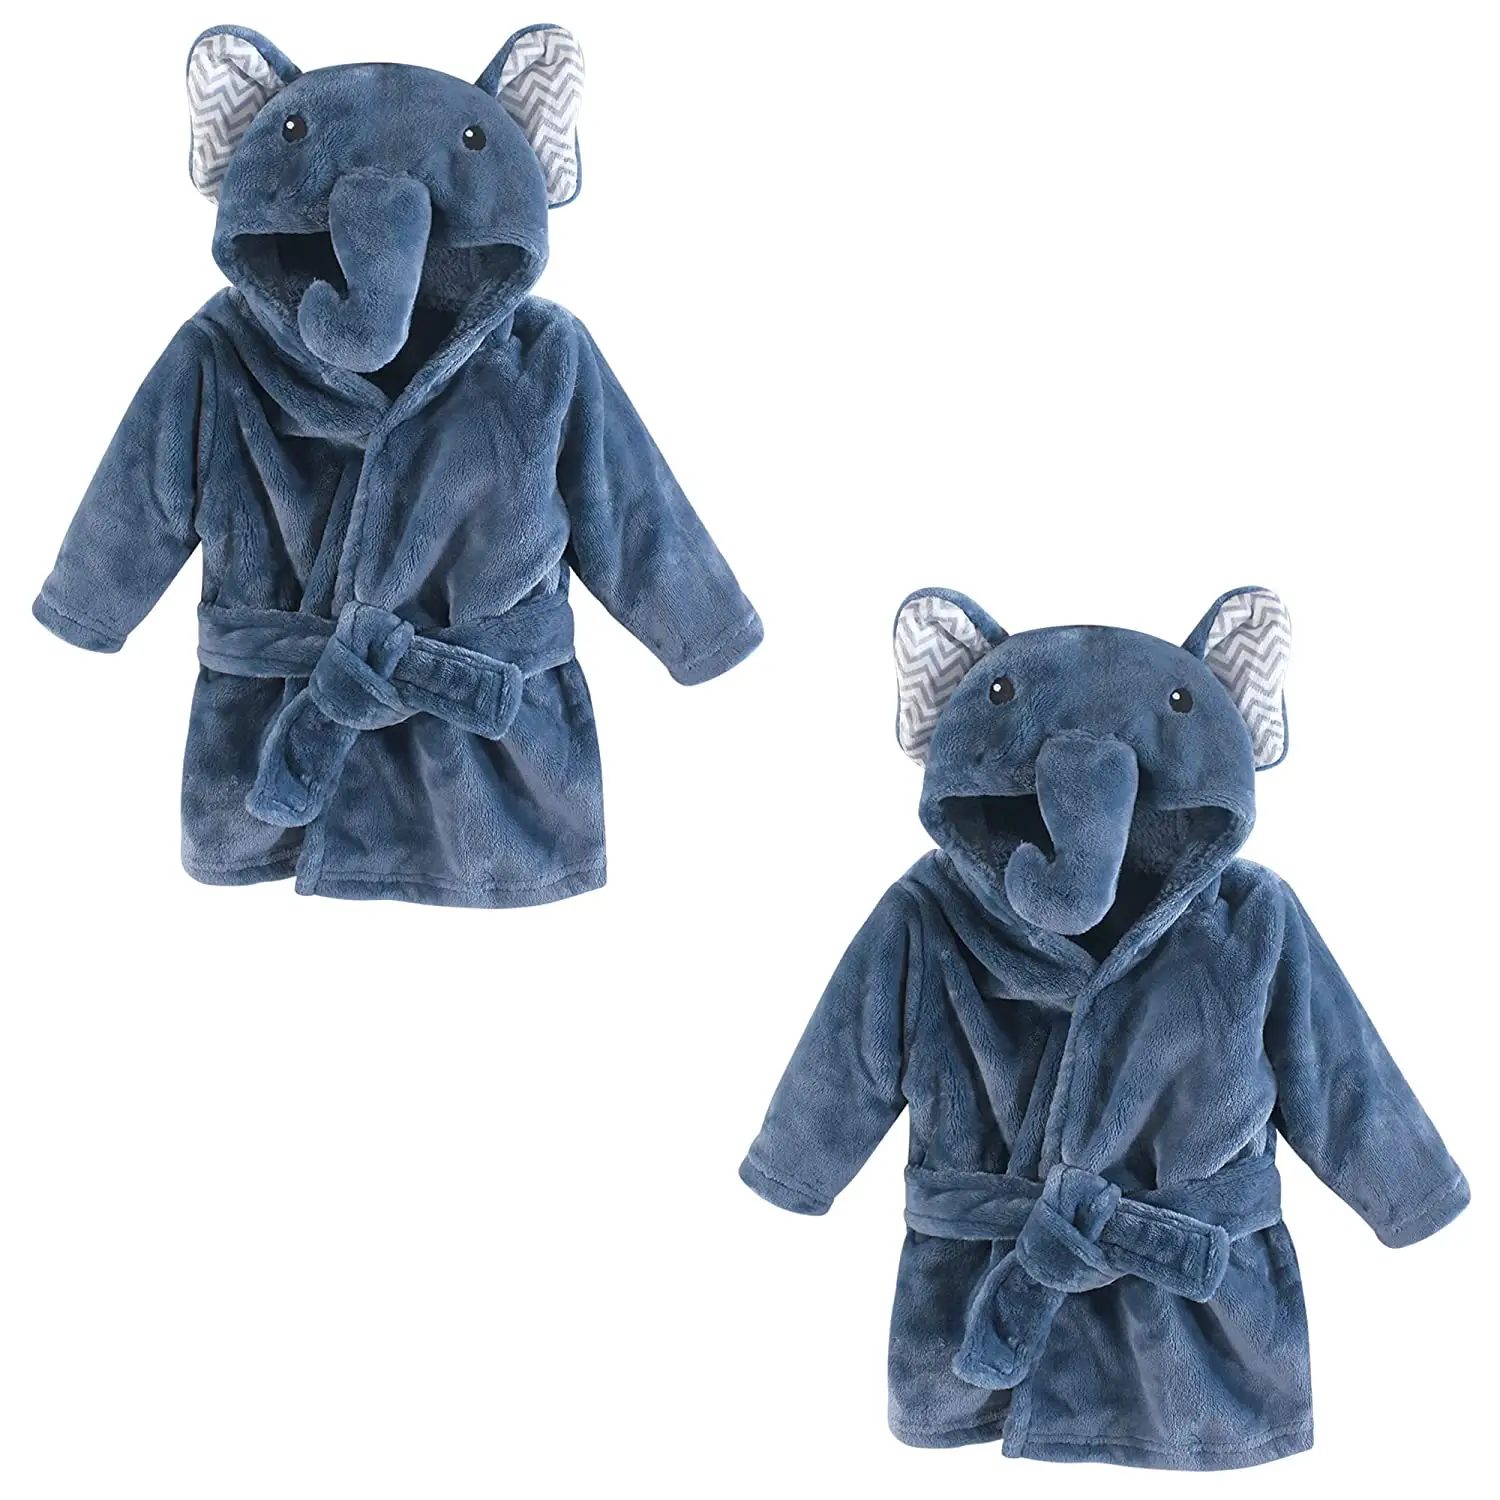 Accappatoio per bambini Custom Animal Design Soft Sleep Wear accappatoio per bambini in spugna di cotone 100% con orecchie